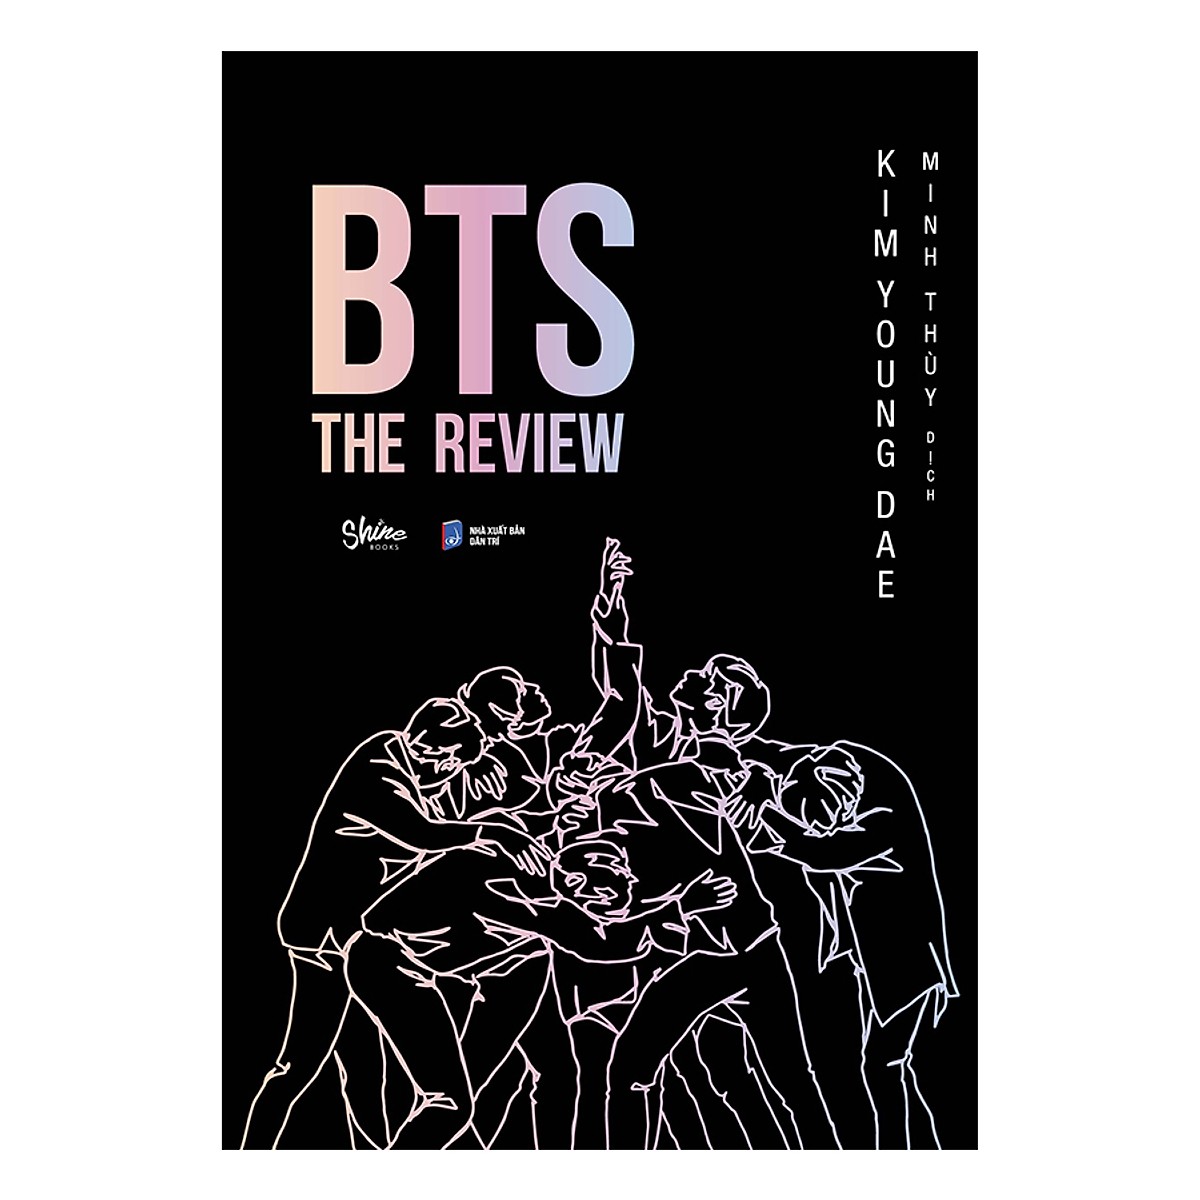 Cuốn Sách Viết Về BTS Bán Chạy Nhất ở Hàn Quốc, Được A.R.M.Y Săn Đón Nhiều Nhất : BTS: THE REVIEW (Bí Quyết Thành Công Của BTS)